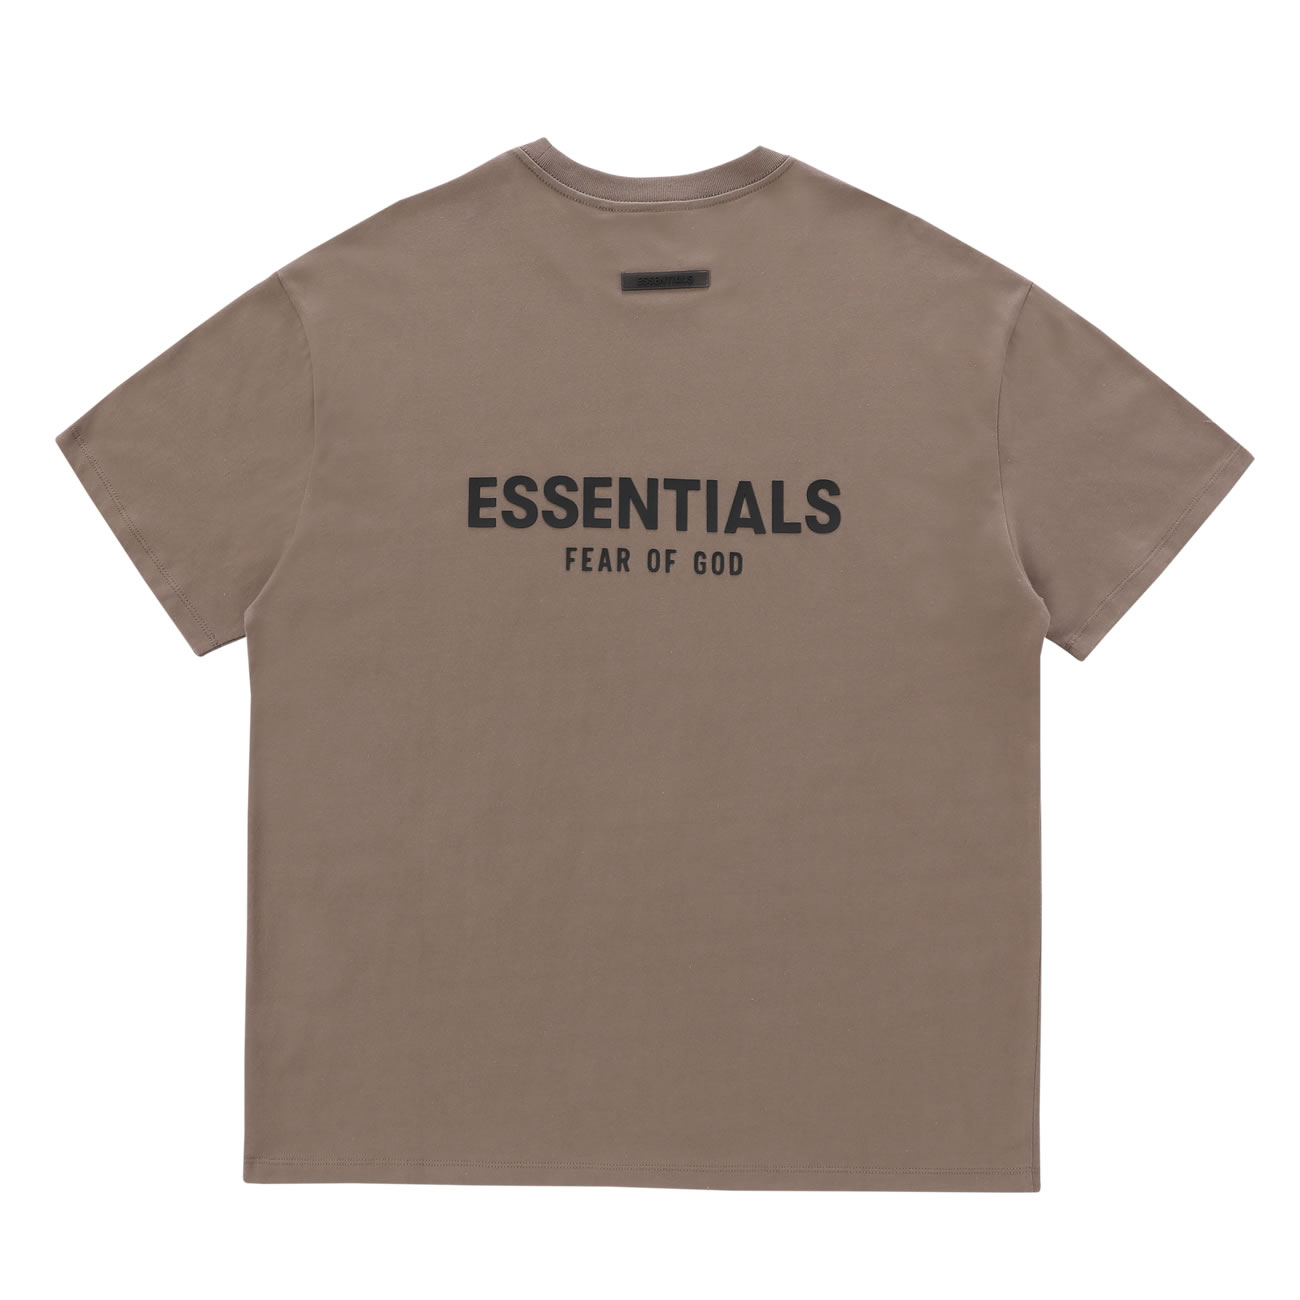 Fear Of God Essentials T Shirt Cream Buttercream Ss21 (3) - newkick.org